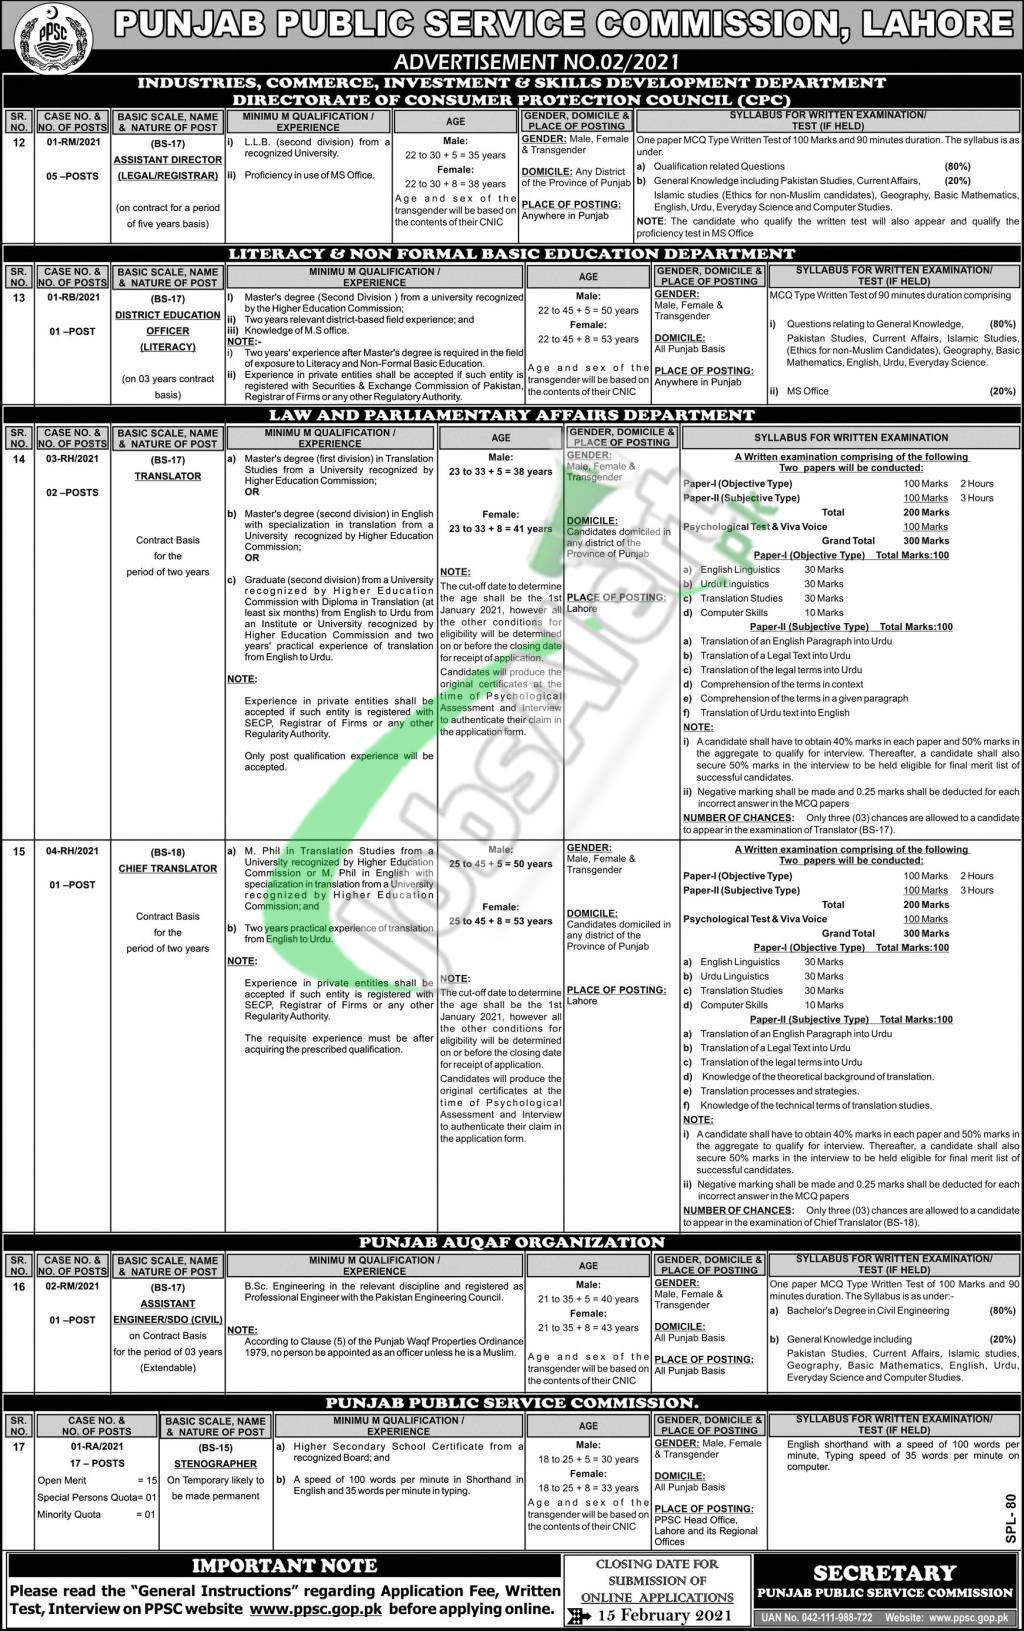 PPSC Jobs Advertisement 2021 | Punjab Public Service Commission